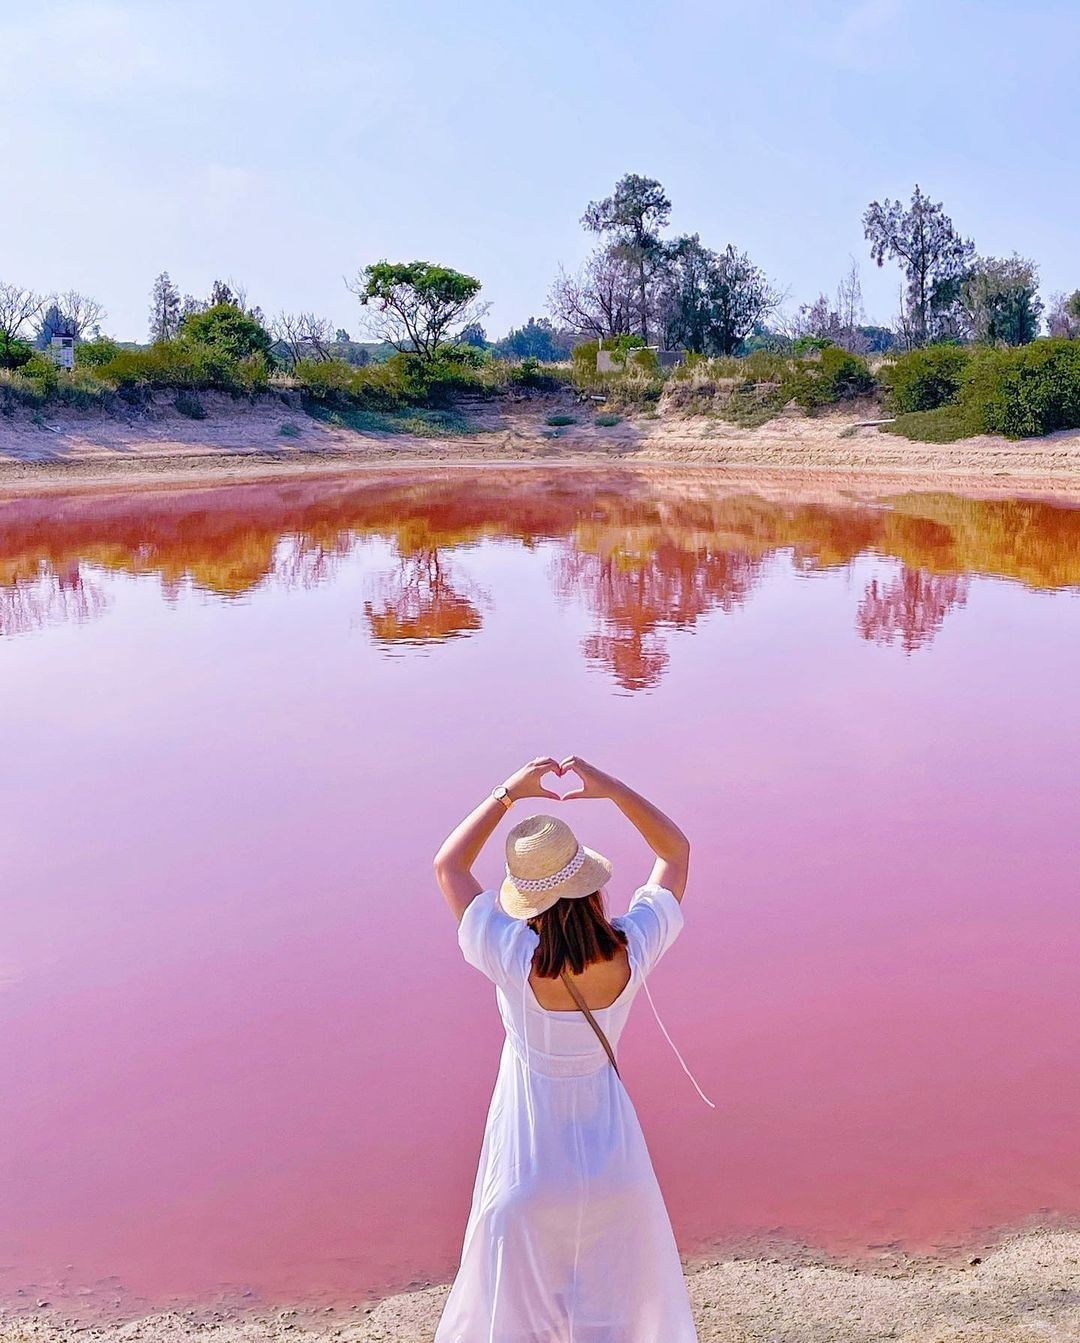 金門粉紅湖
於慈湖旁的魚塭池內的營養源高，讓紅色的「光合菌」大量繁衍，導致慈湖的池塘改變了色彩，其中粉紅湖最為吸睛～
-
感謝  ...